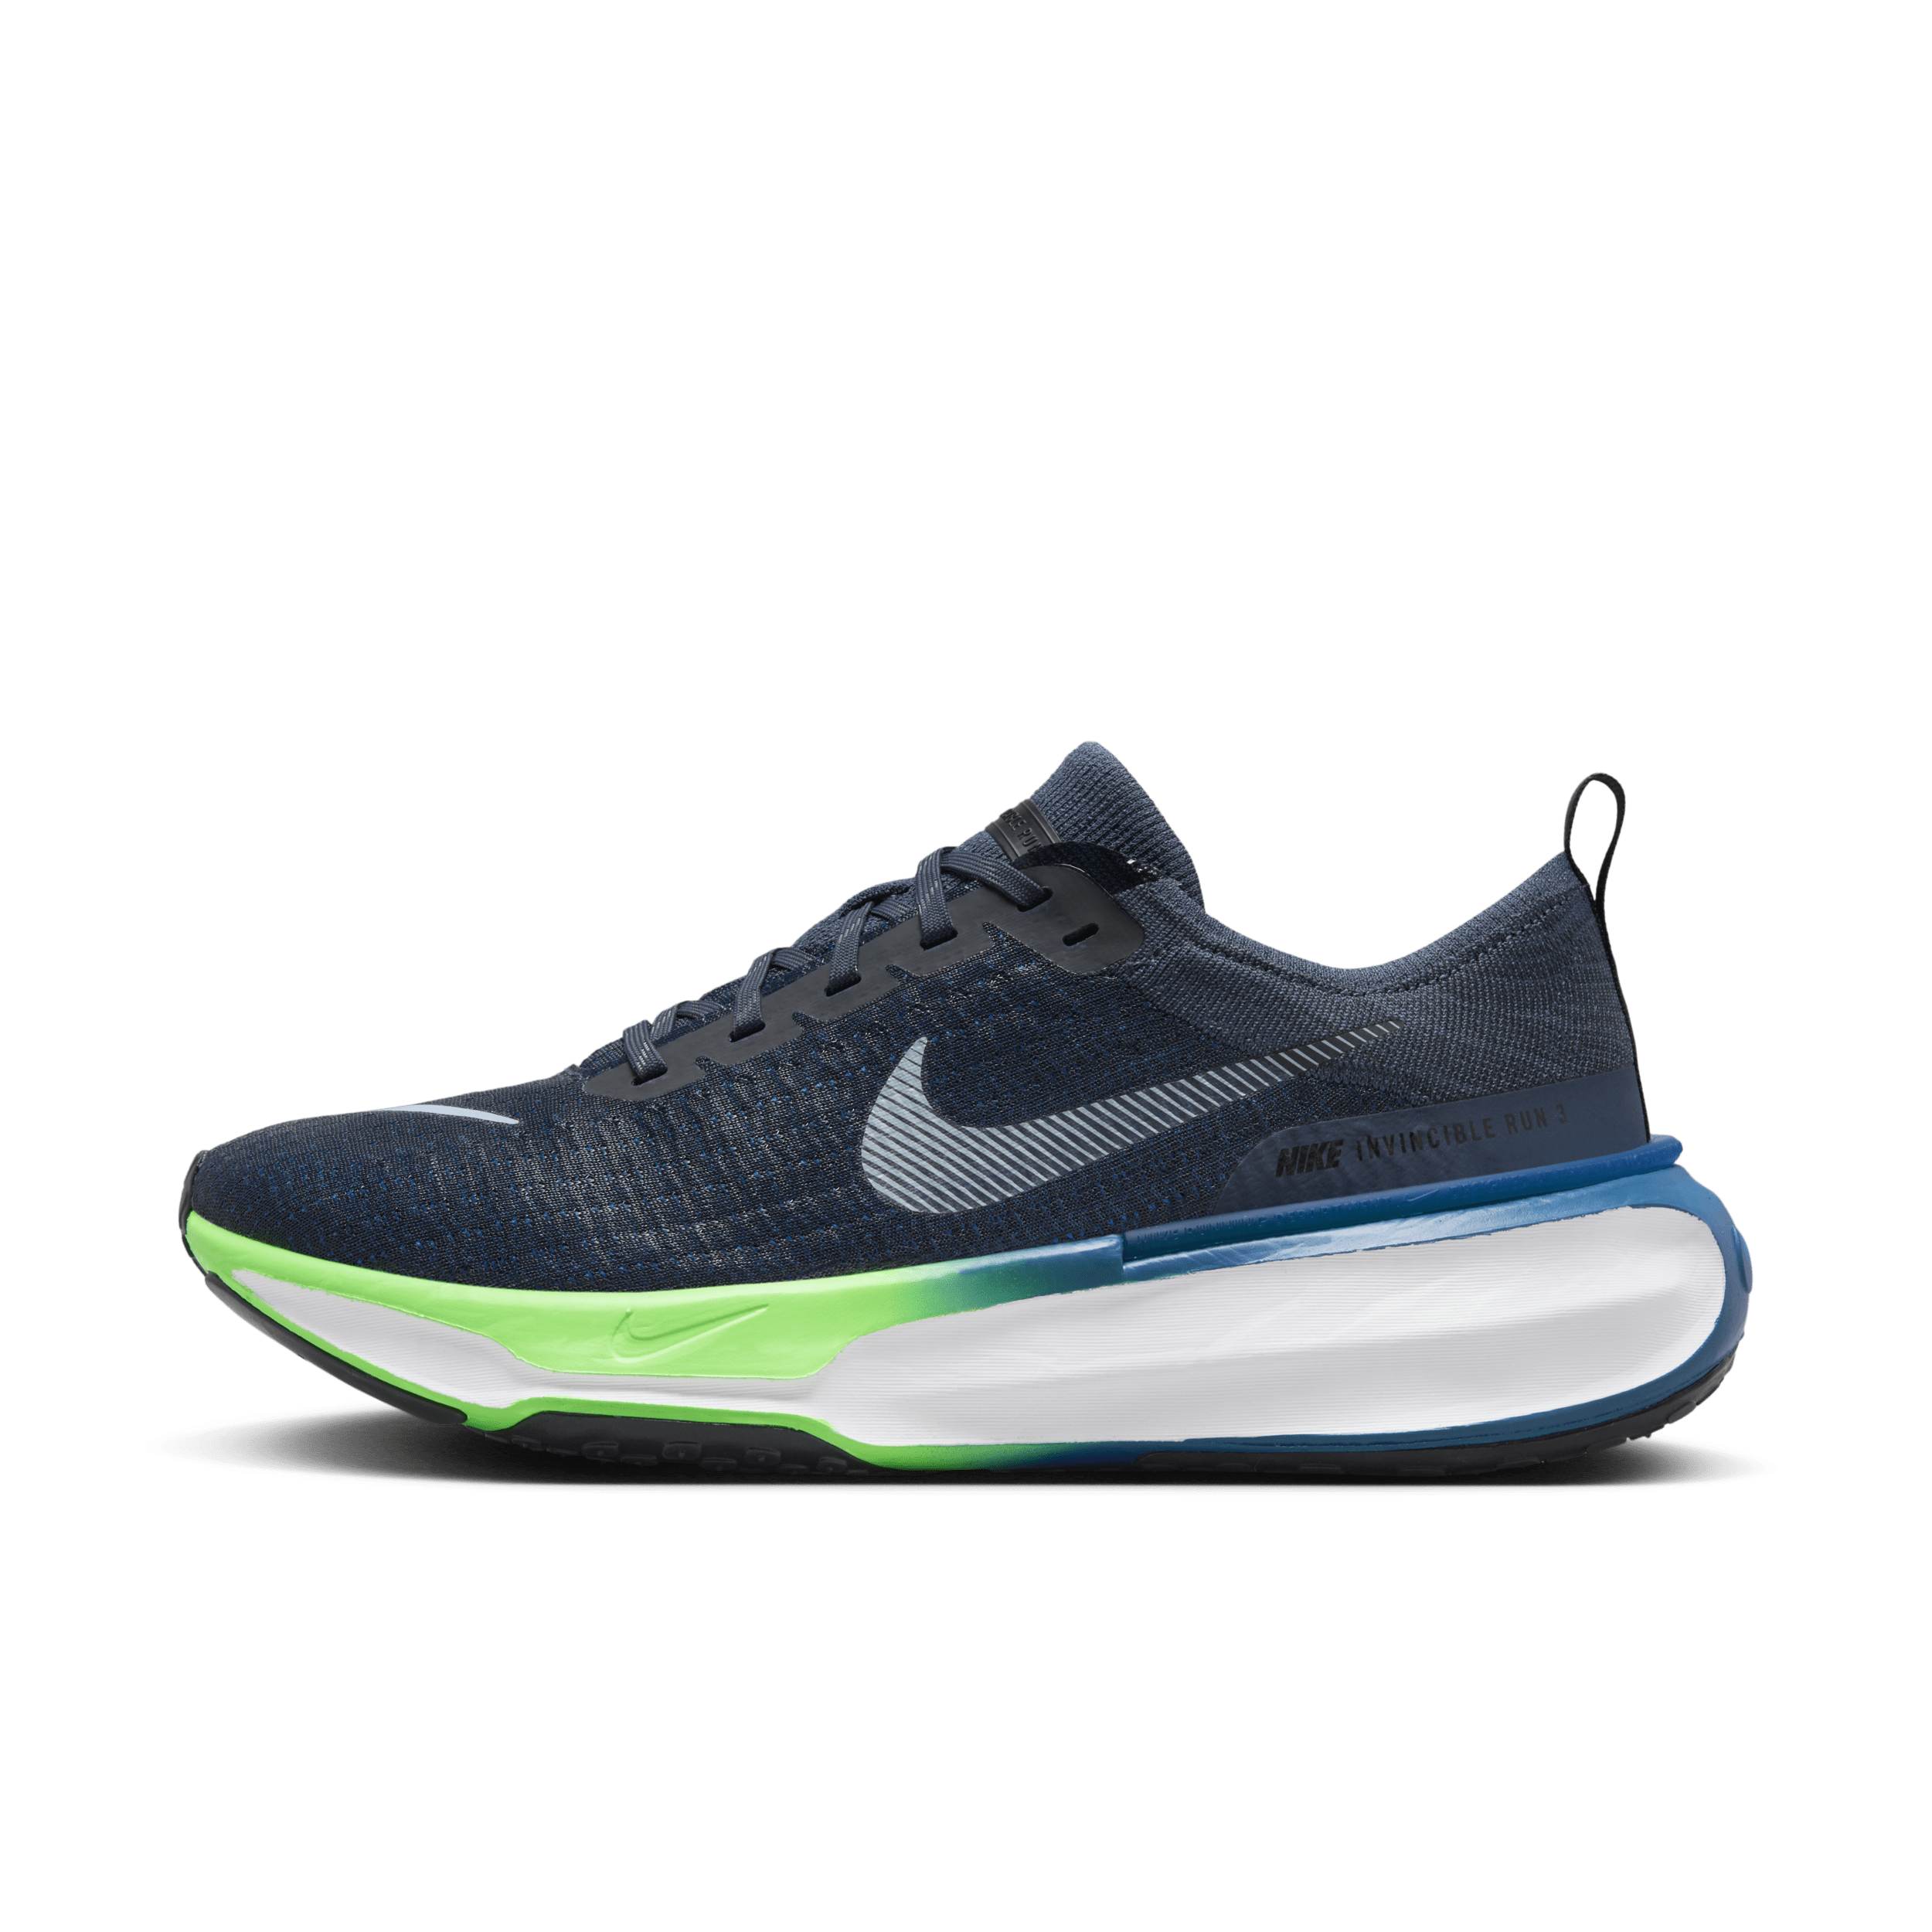 Nike Invincible 3 Zapatillas de running para asfalto - Hombre - Azul